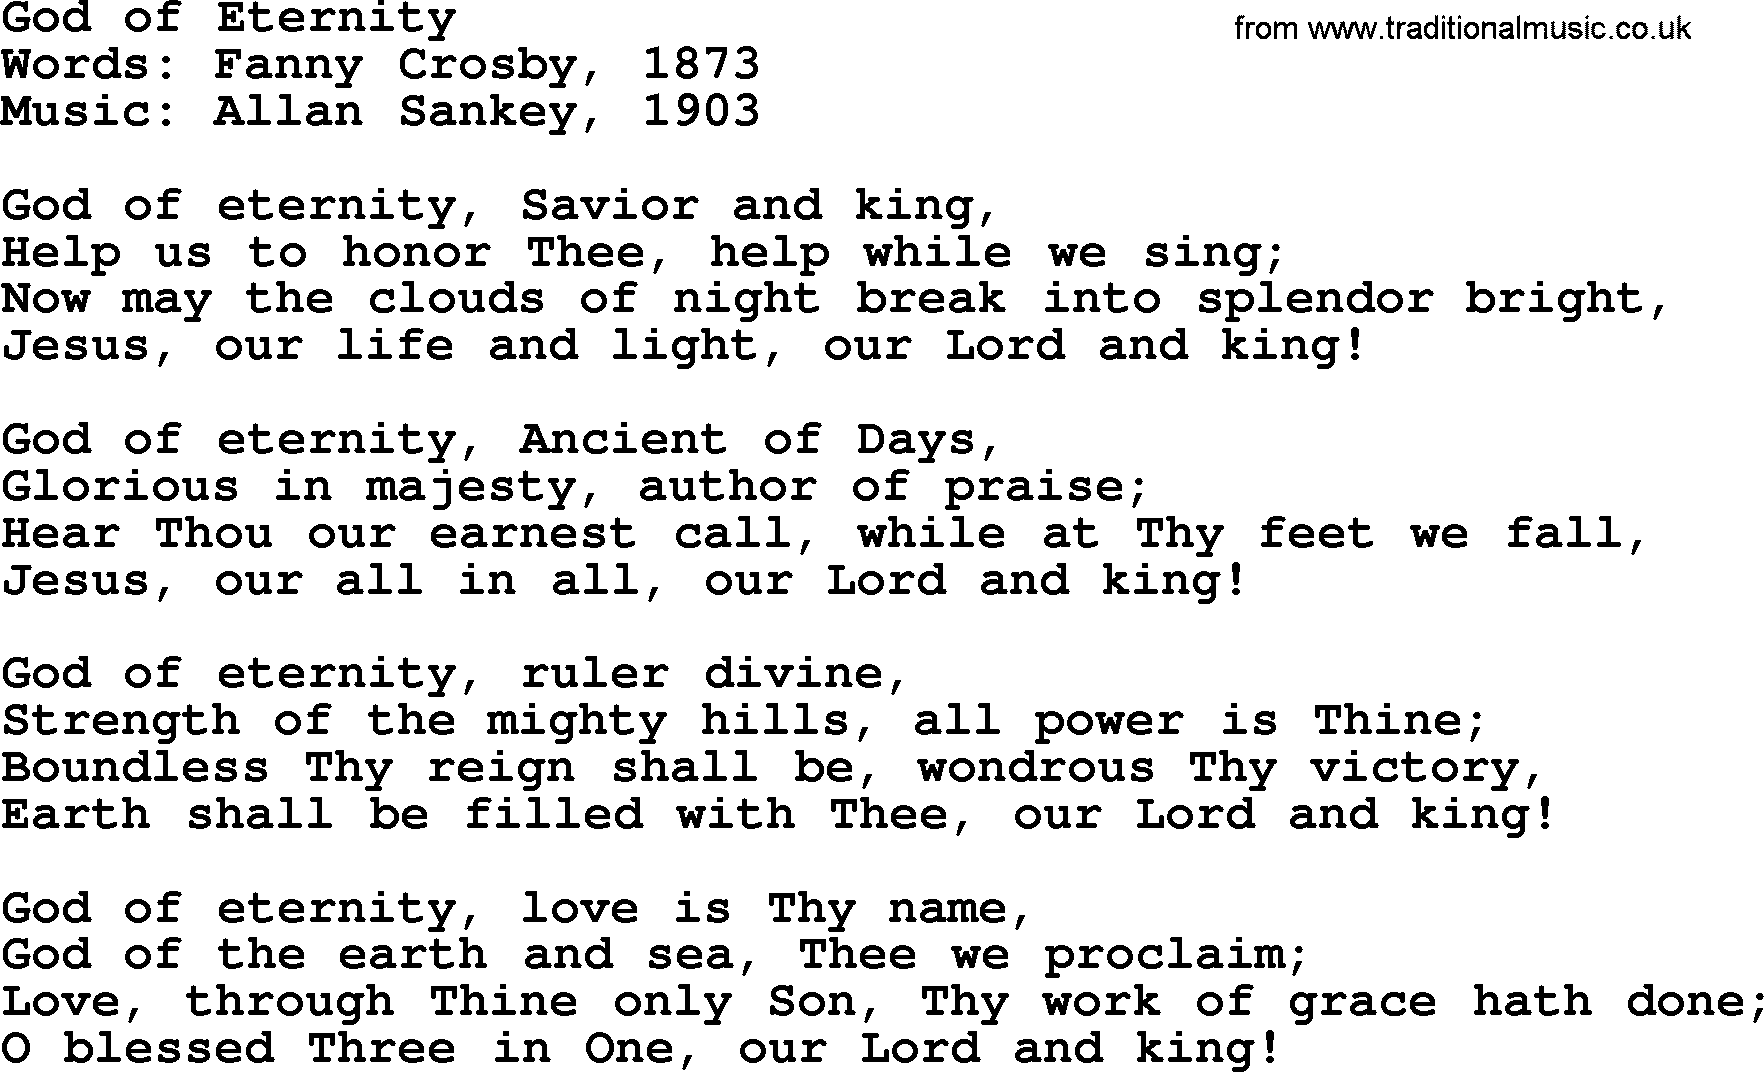 Ira Sankey hymn: God of Eternity-Ira Sankey, lyrics